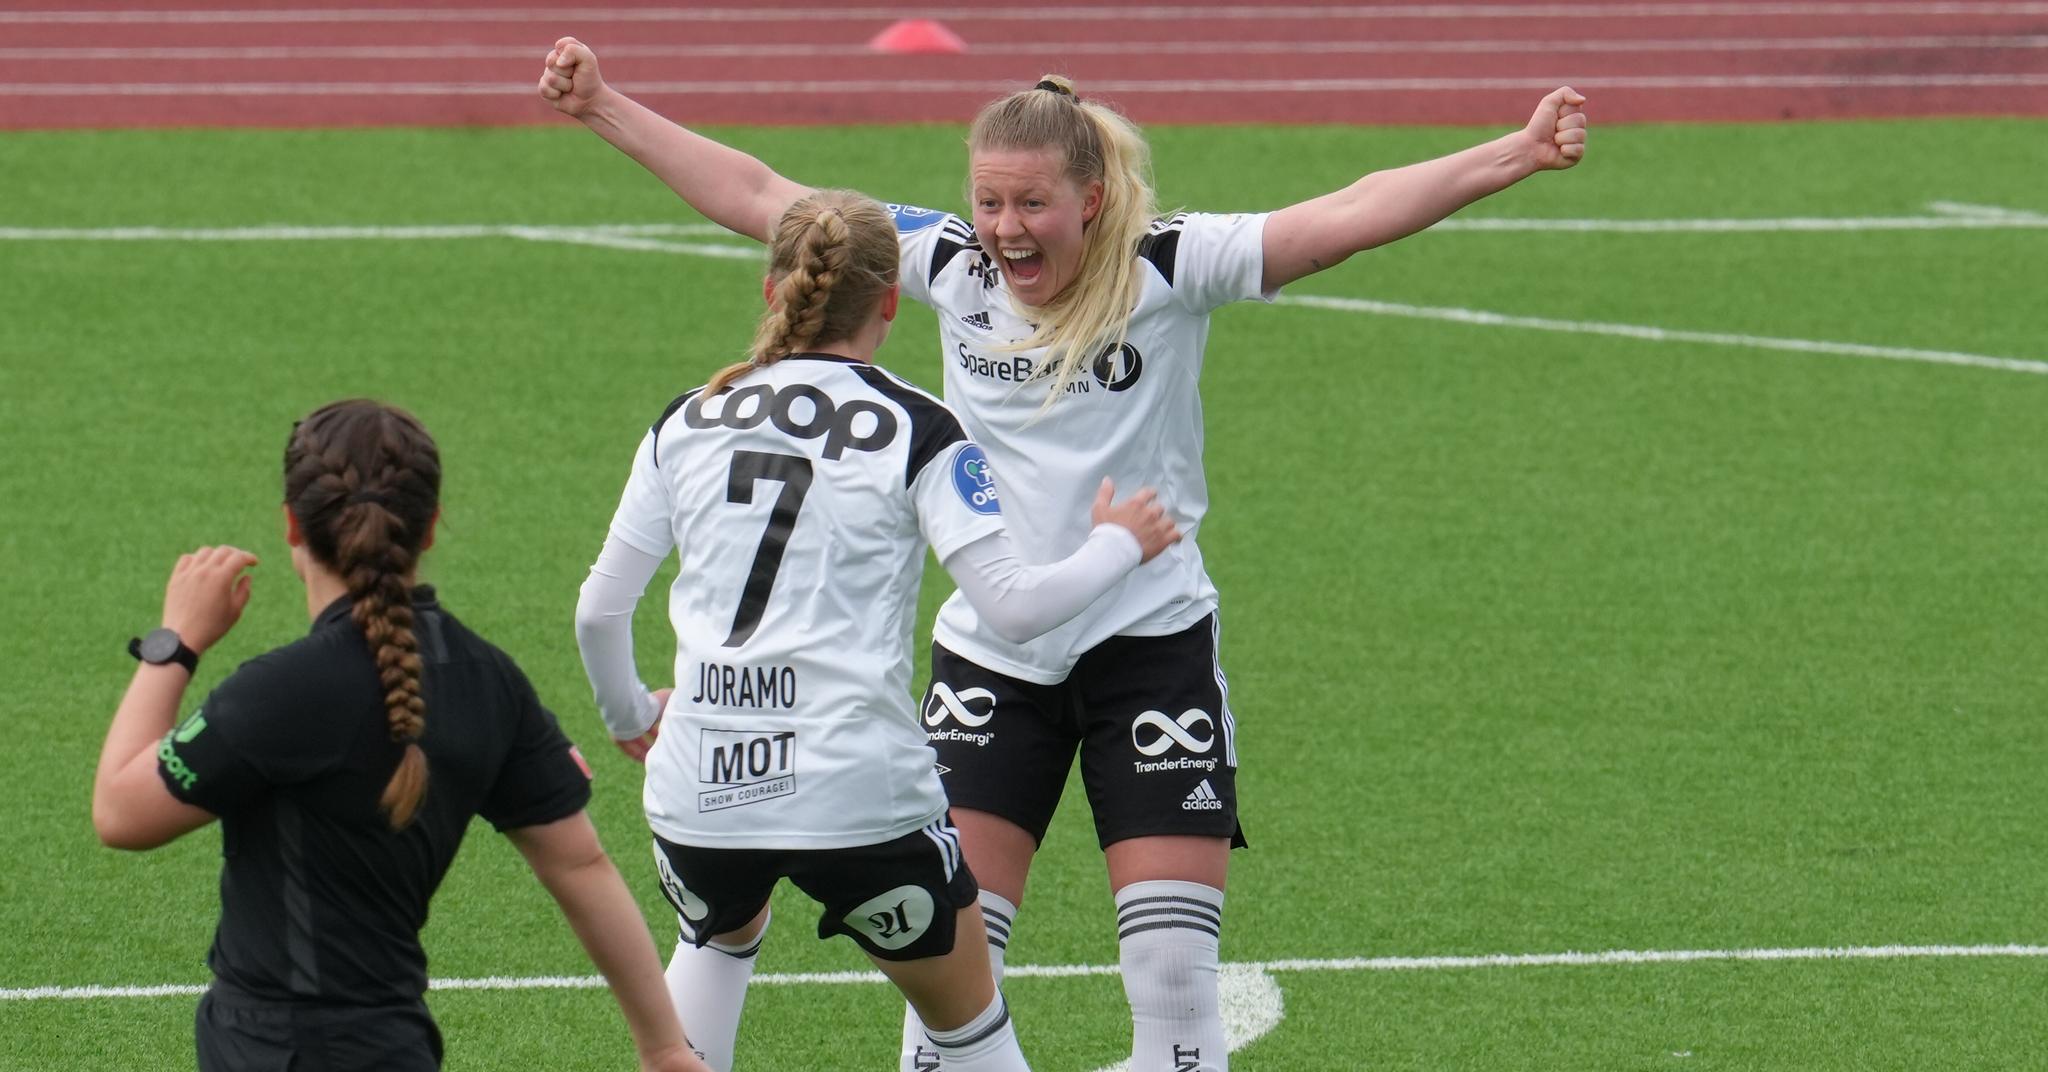 Selma Sól Magnúsdóttir scoret Rosenborgs andre mål. Også det var et kremmerhus av en scoring. 